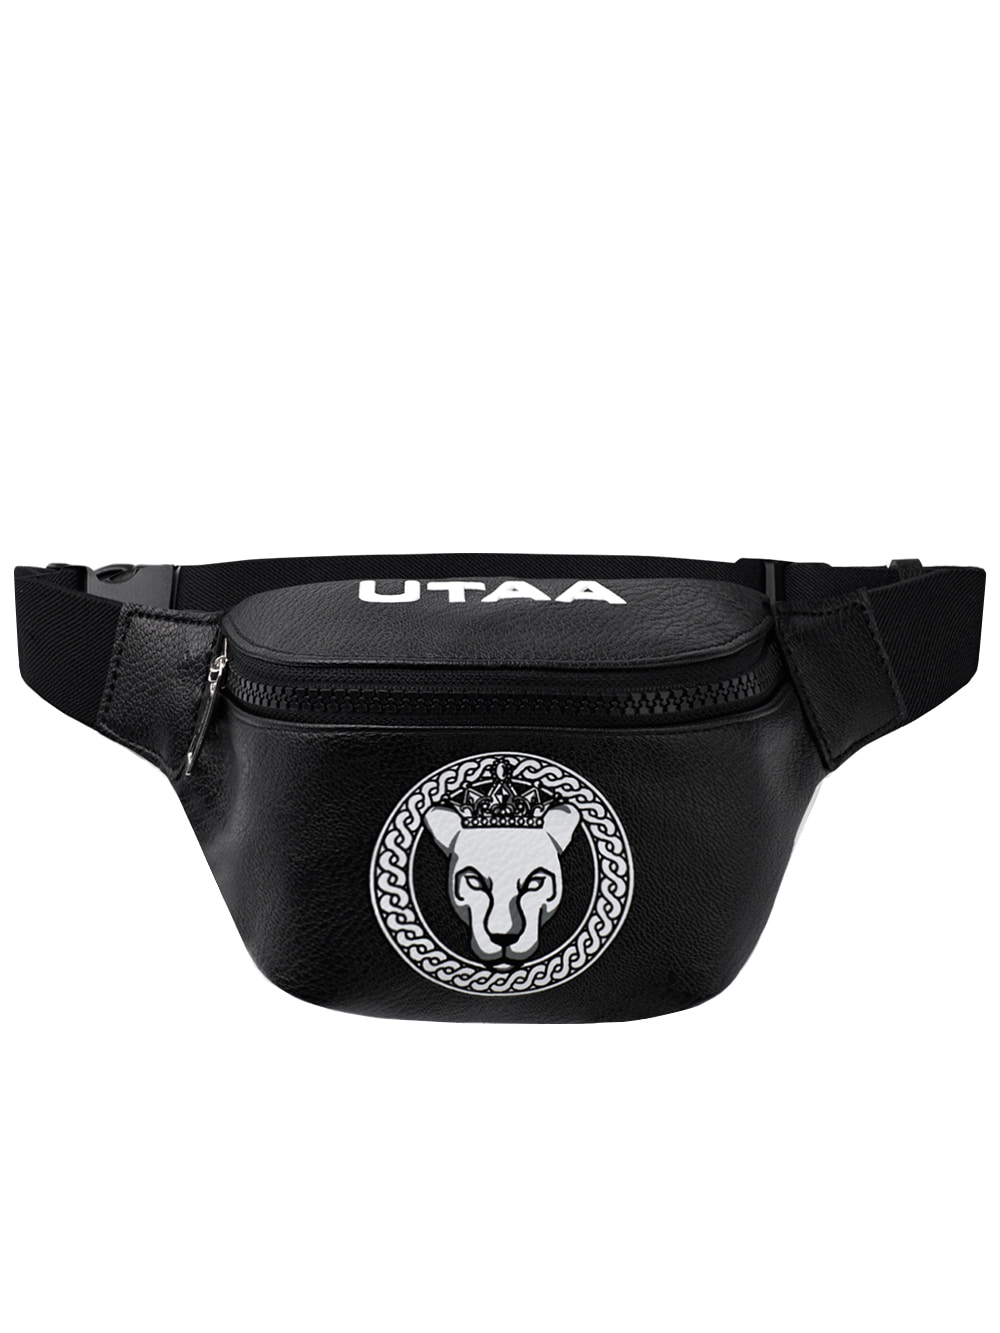 UTAA Scudo Ring Panther Belt Bag : Black(UC0GAU248BK)